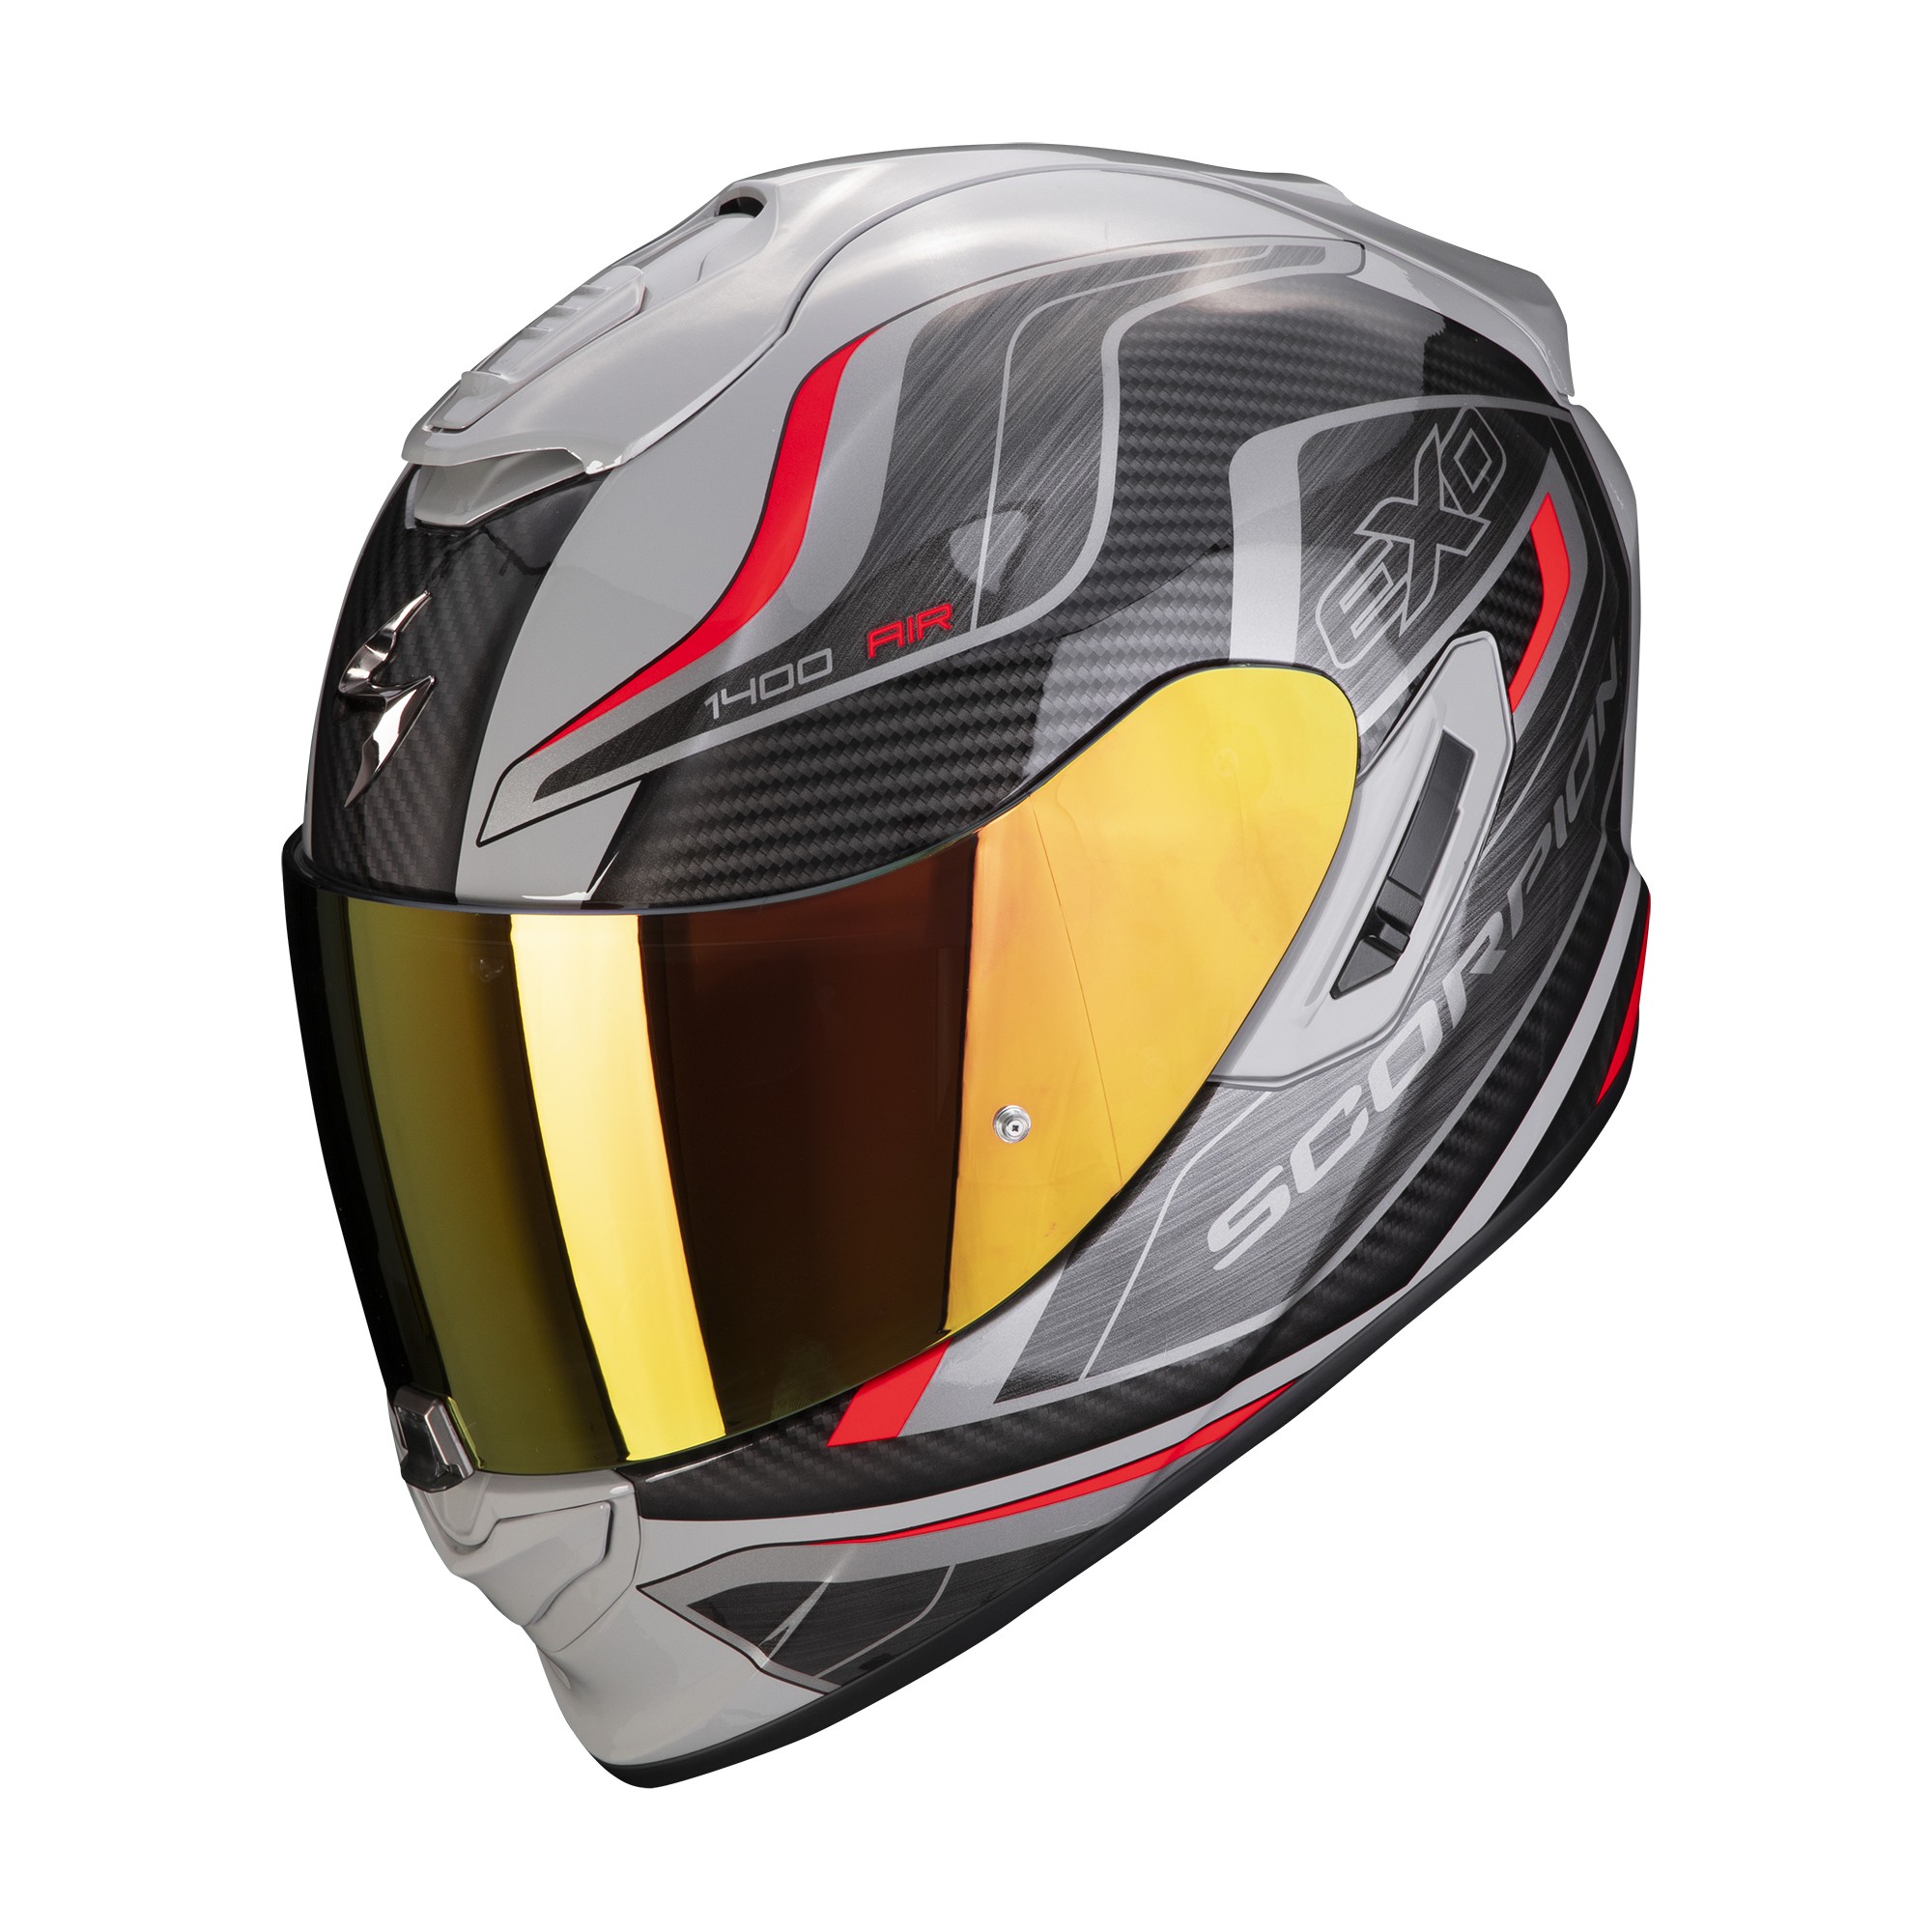 Scorpion casque moto EXO-1400 AIR ATTUNE Gris-Noir-Rouge ecran solaire